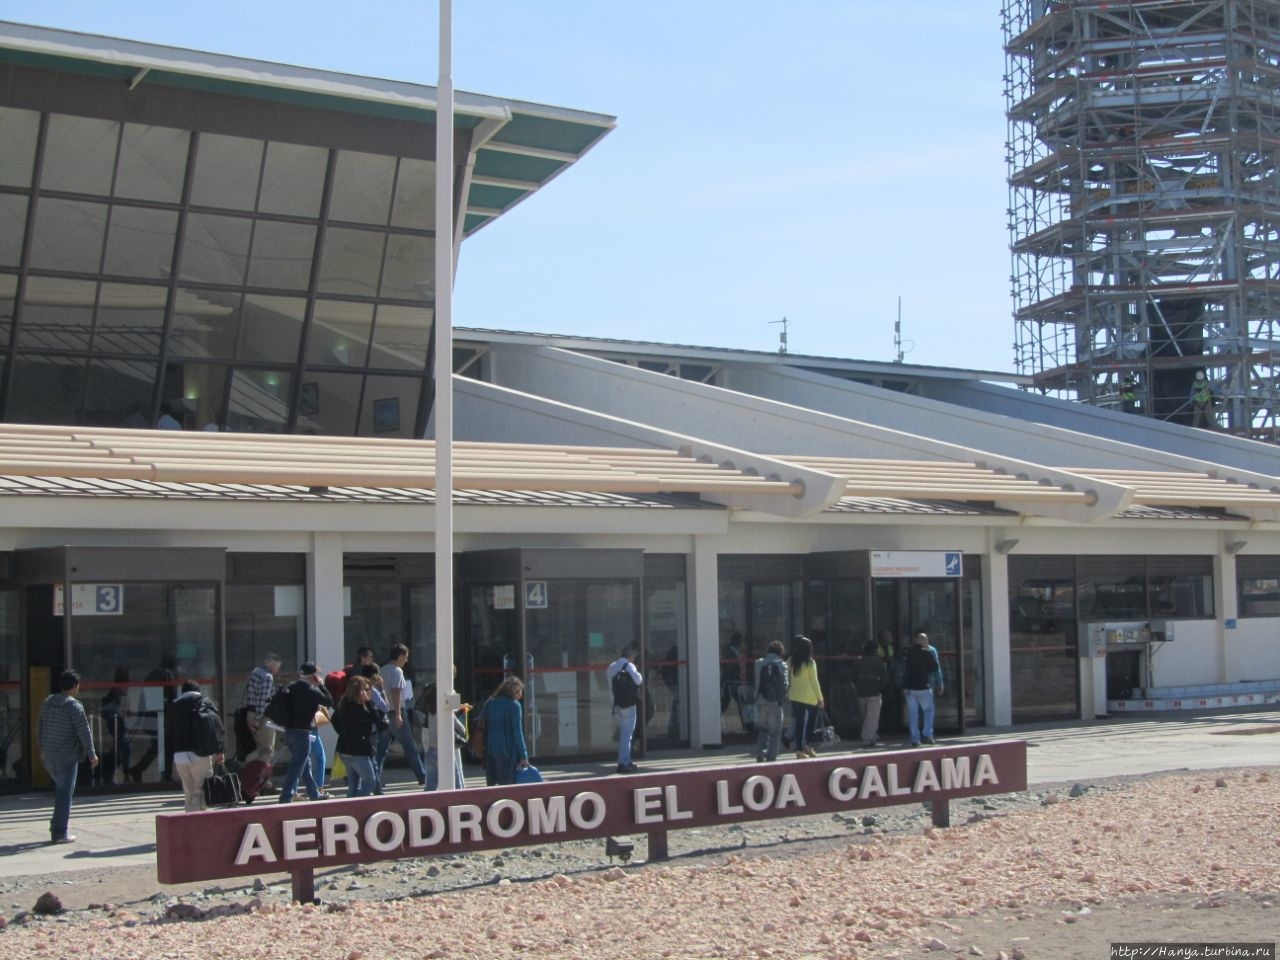 Аэропорт Калама / El Loa Calama